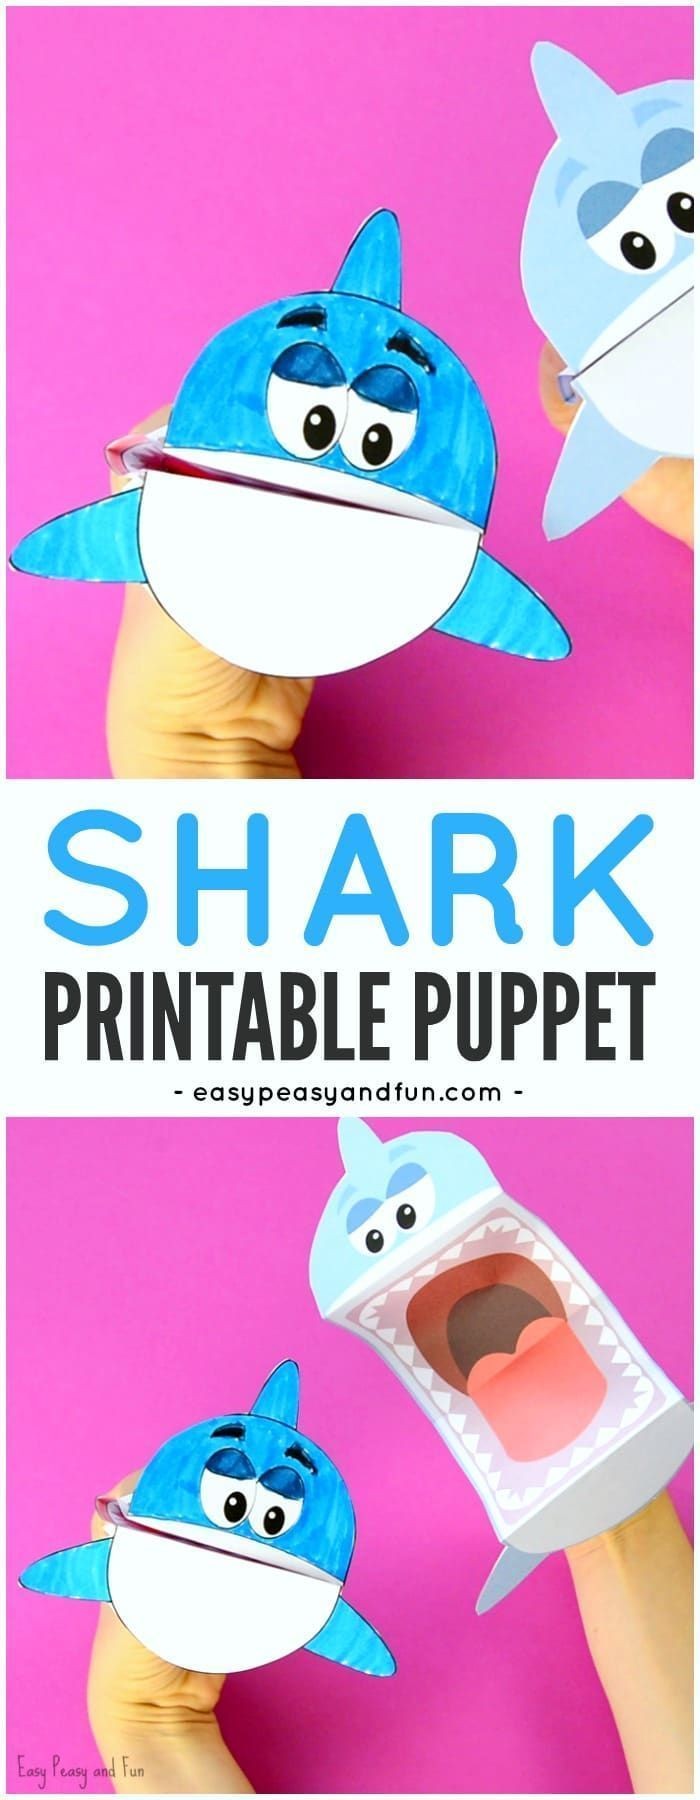 Papercraft Kids Printable Shark Puppet Art Kids Diys Pinterest